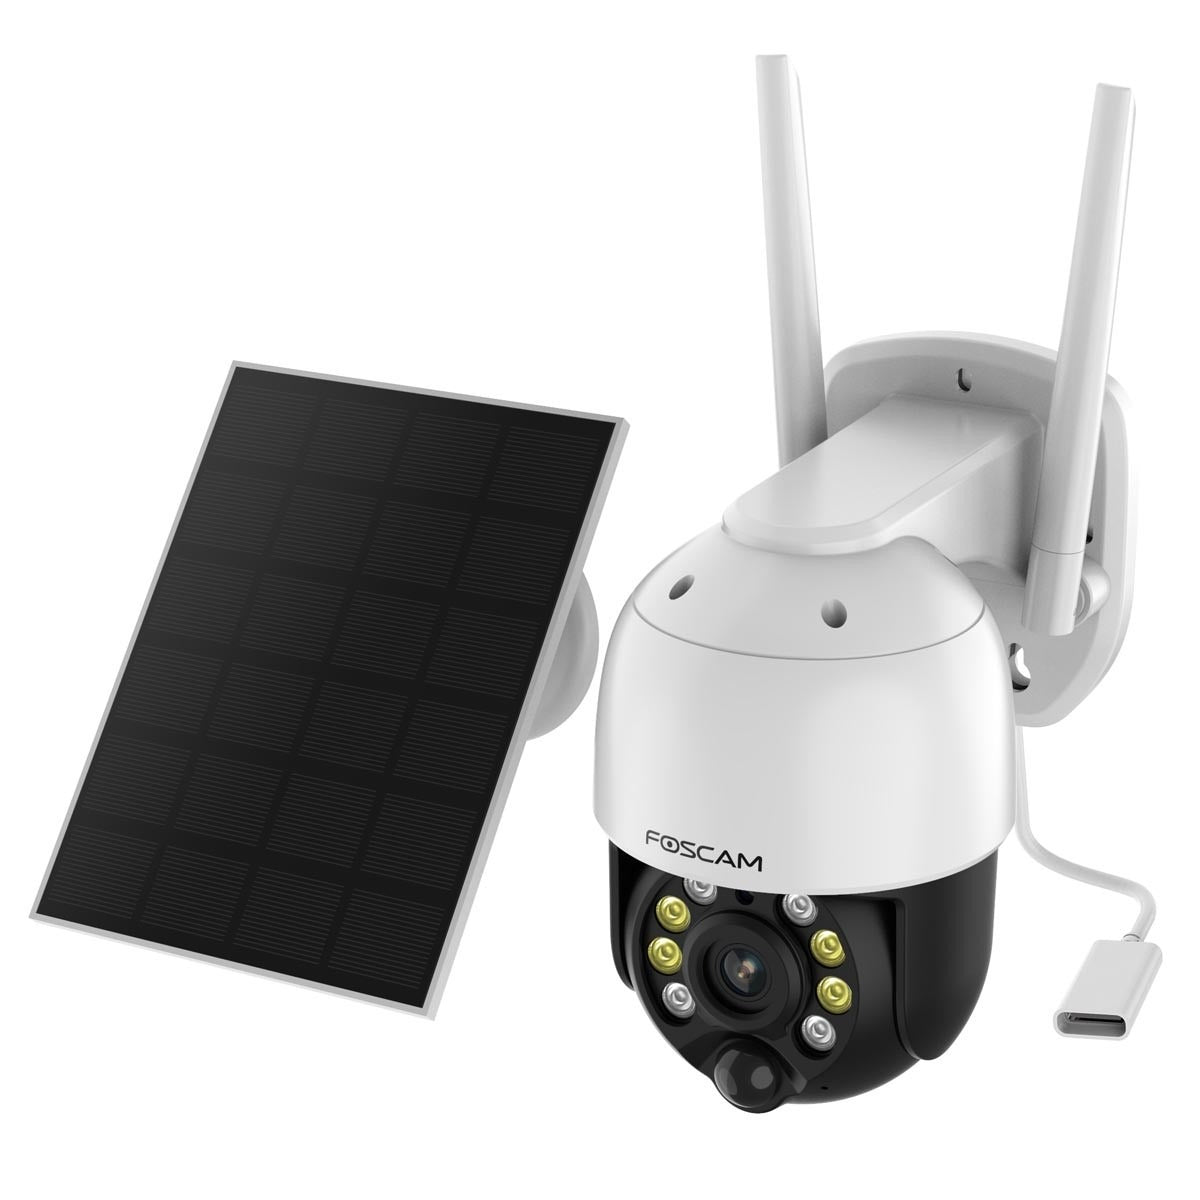 Foscam B4 WLAN Überwachungskamera mit Schwenk- und Neigefunktion, inkl.Solarpanel - Calitronshop.com